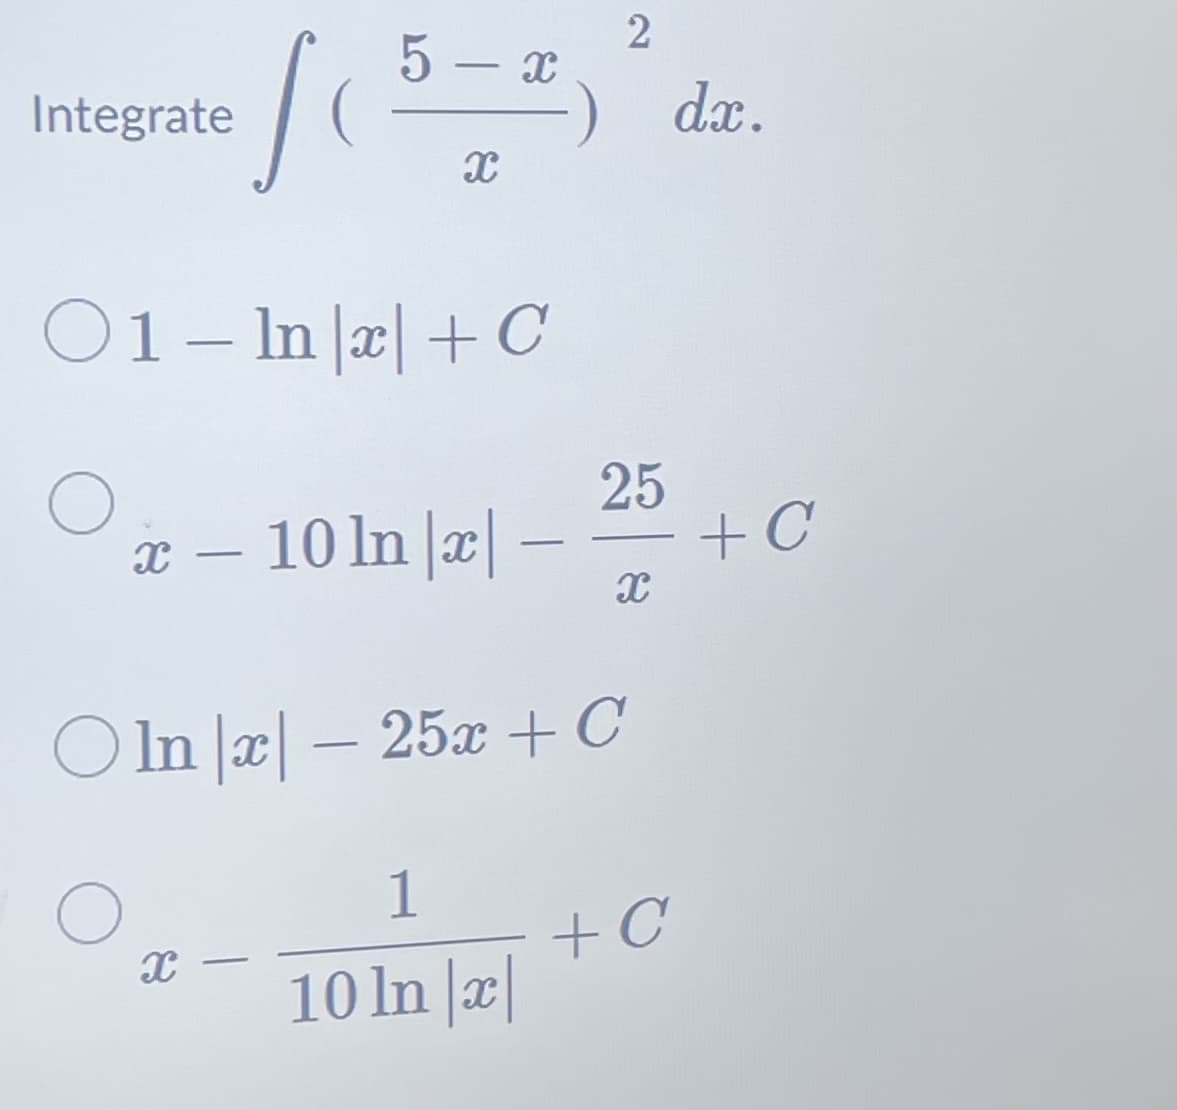 Integrate
so
5-x
01- Ina+C
X-
X
x - 10 ln |x|-
-
-
Oln|x - 25x + C
1
10 ln |x|
2
25
▬▬▬
X
+C
dx.
+C